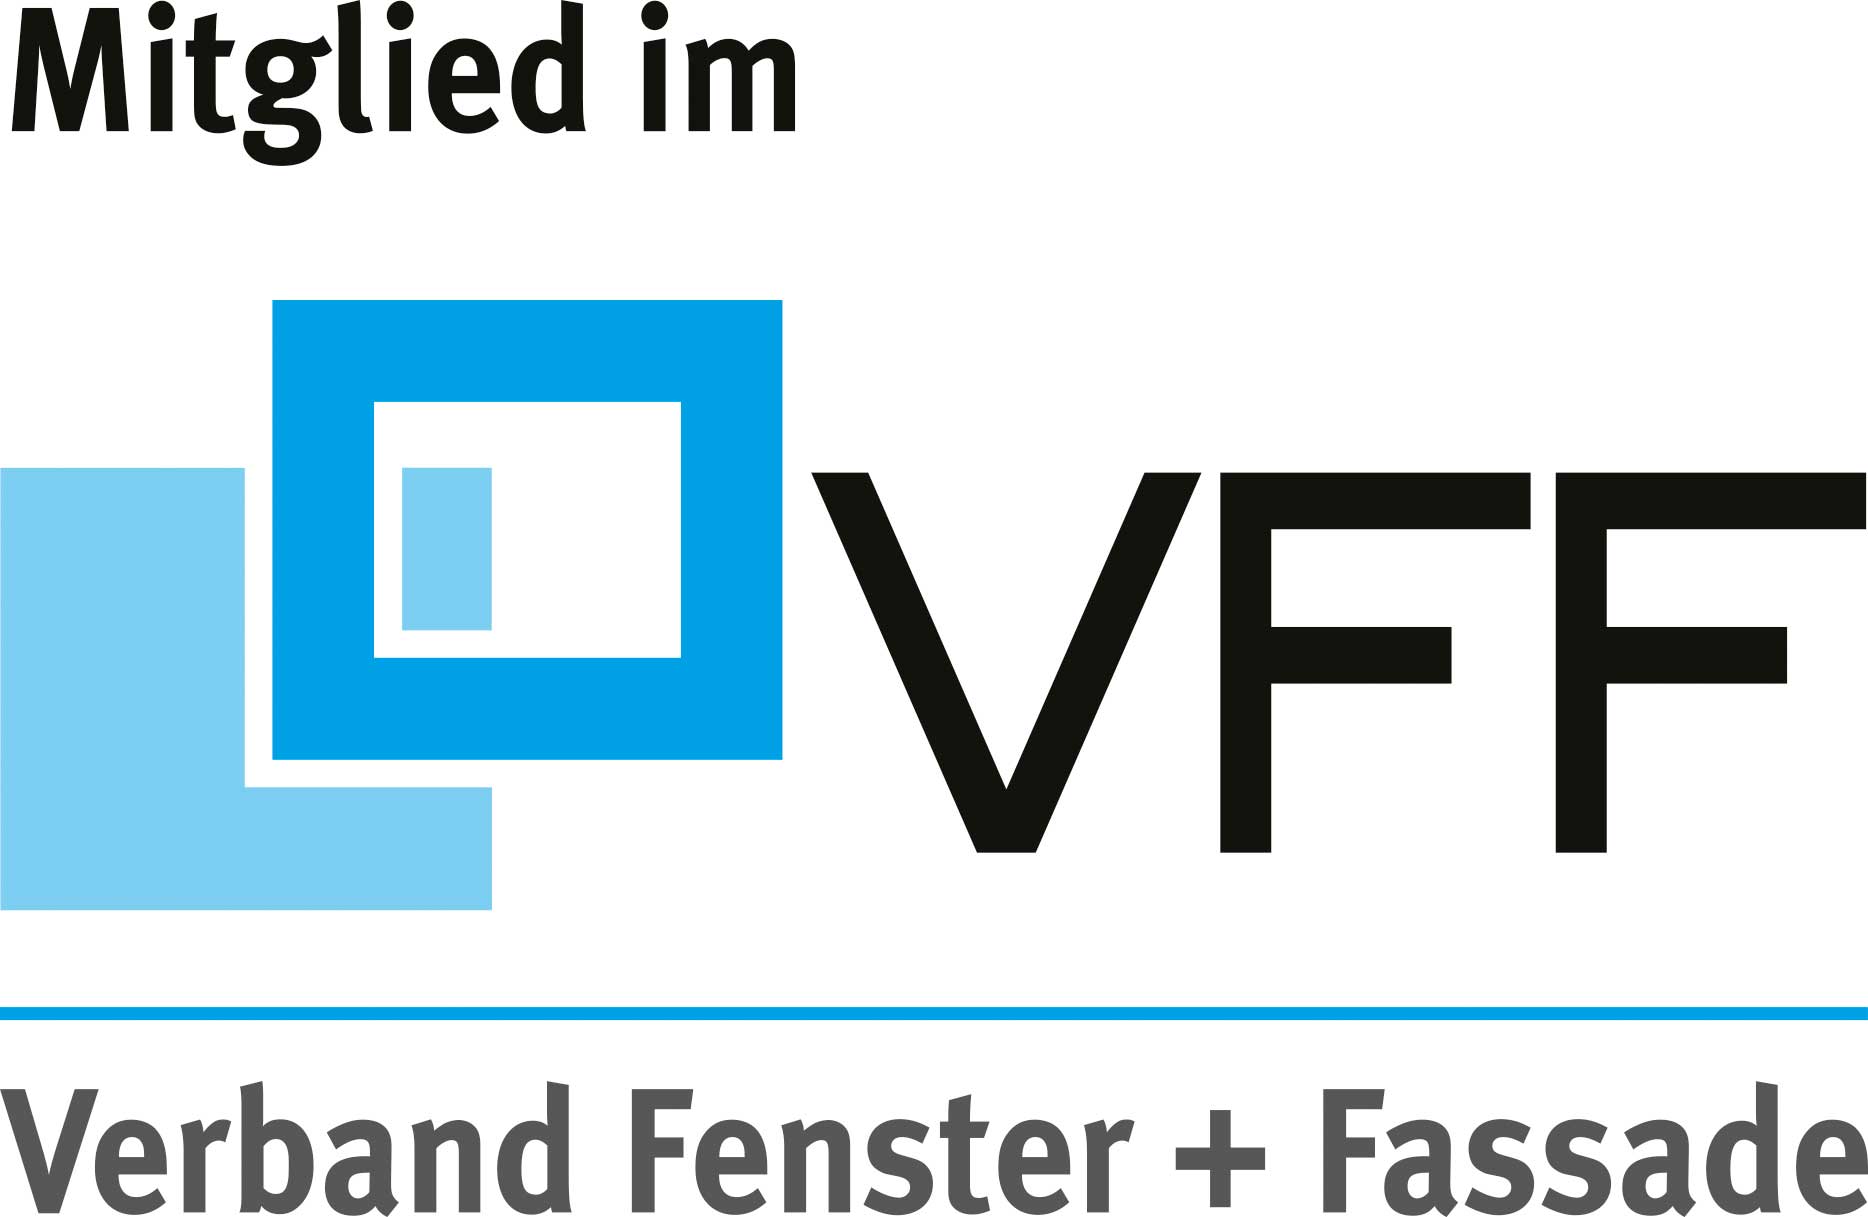 Wir sind Mitglied im Verband Fenster und Fassade (VFF)